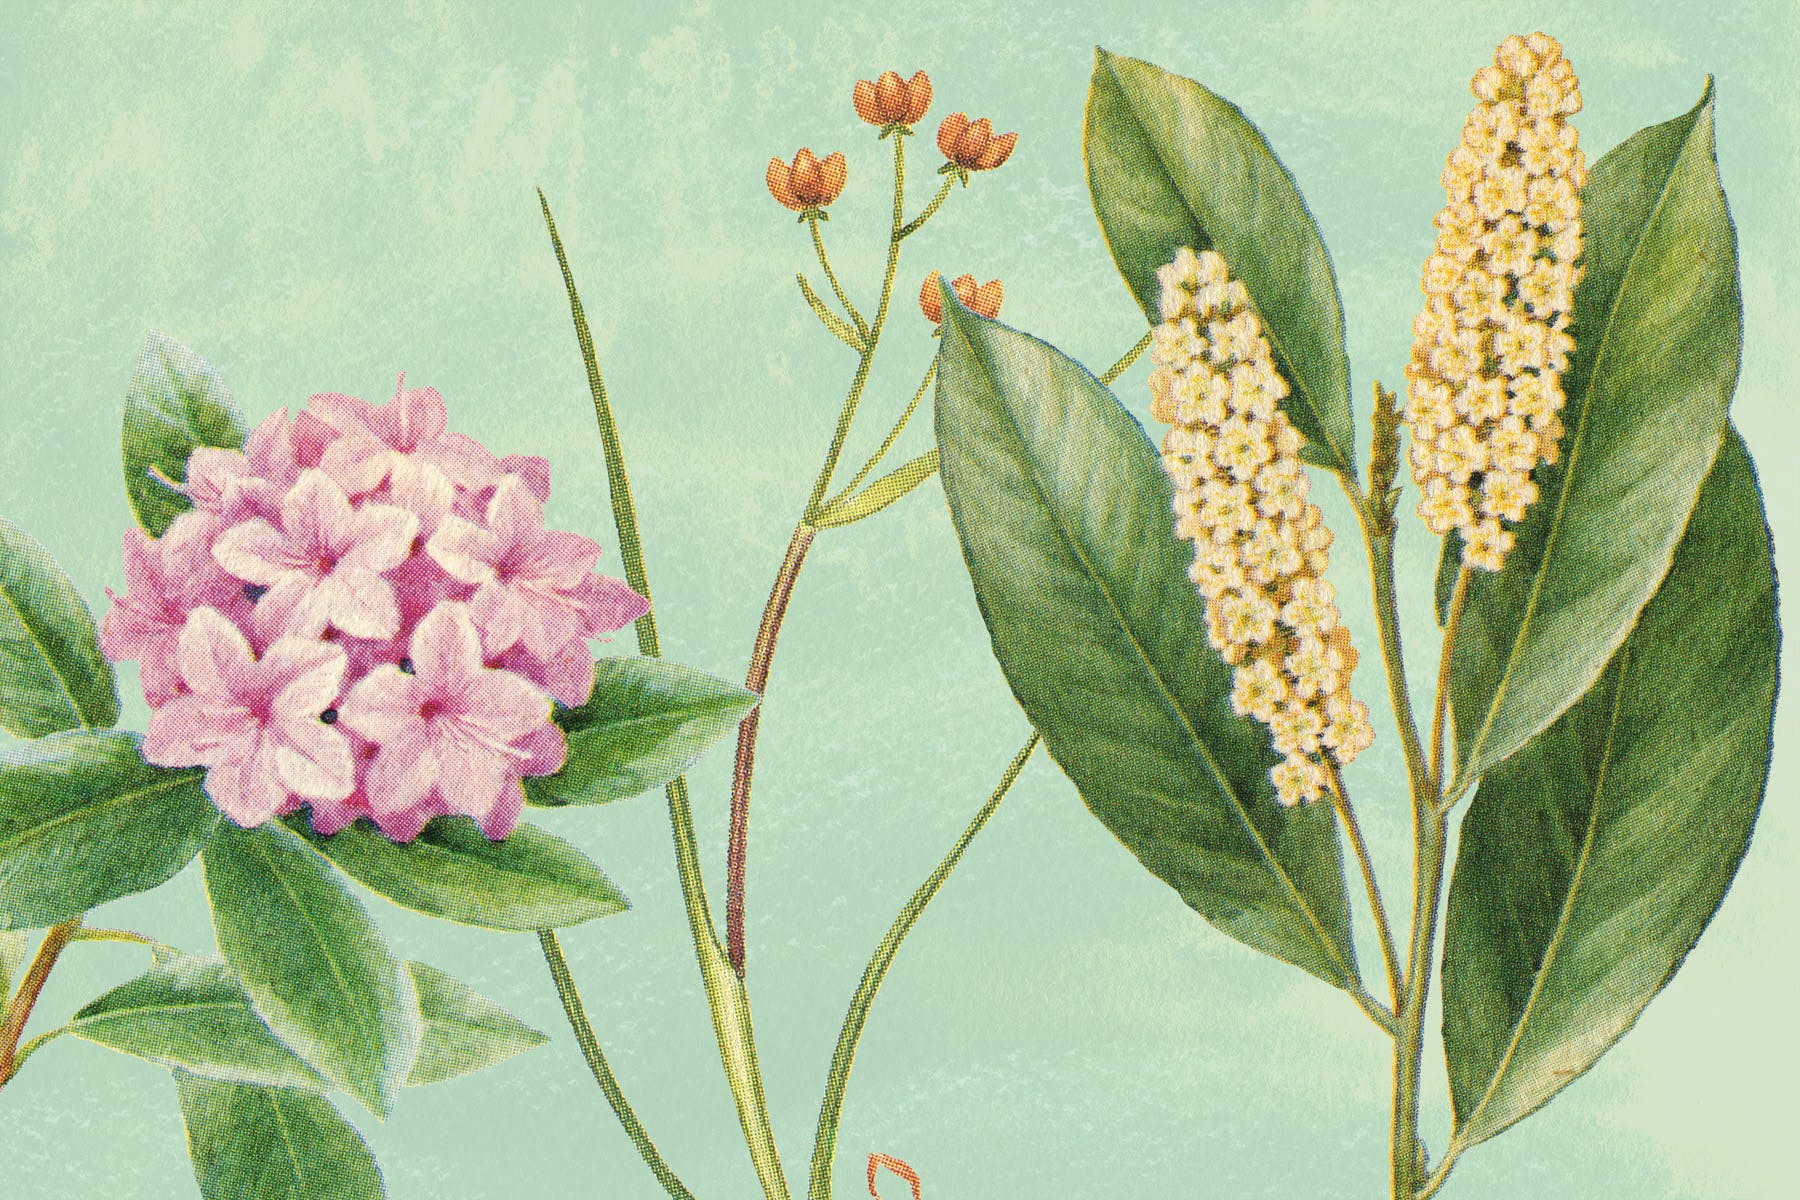 古董书籍植物手绘插画图案设计素材v3 Vintage Botanical Illustrations Vol.3插图1